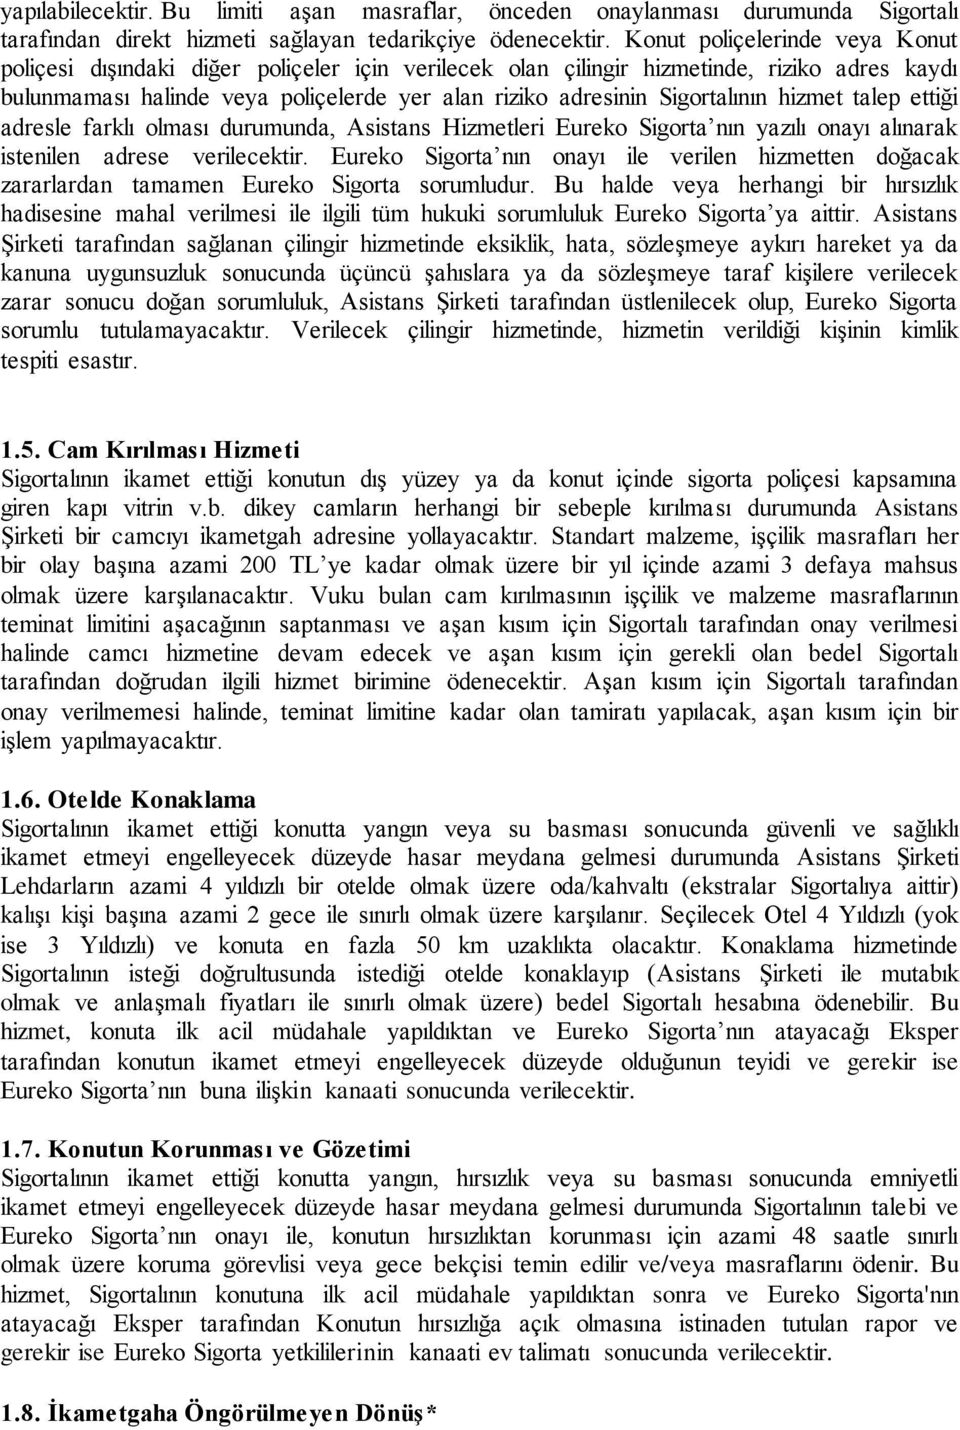 EUREKO SĠGORTA ASĠSTANS HĠZMETLERĠ HÜKÜM ve KOġULLARI - PDF Free Download